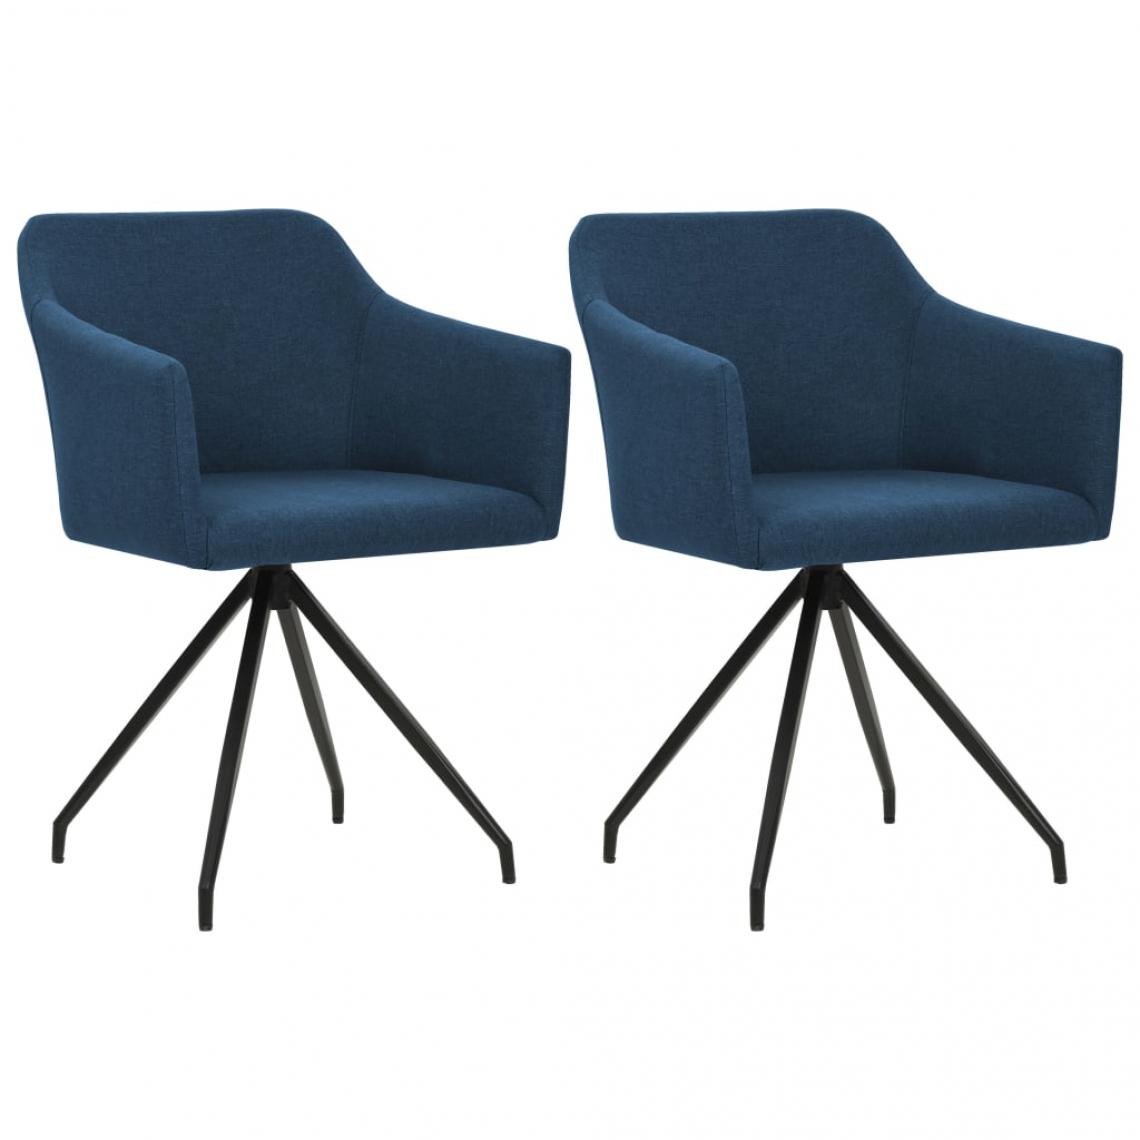 Decoshop26 - Lot de 2 chaises de salle à manger cuisine design moderne tissu bleu CDS020221 - Chaises